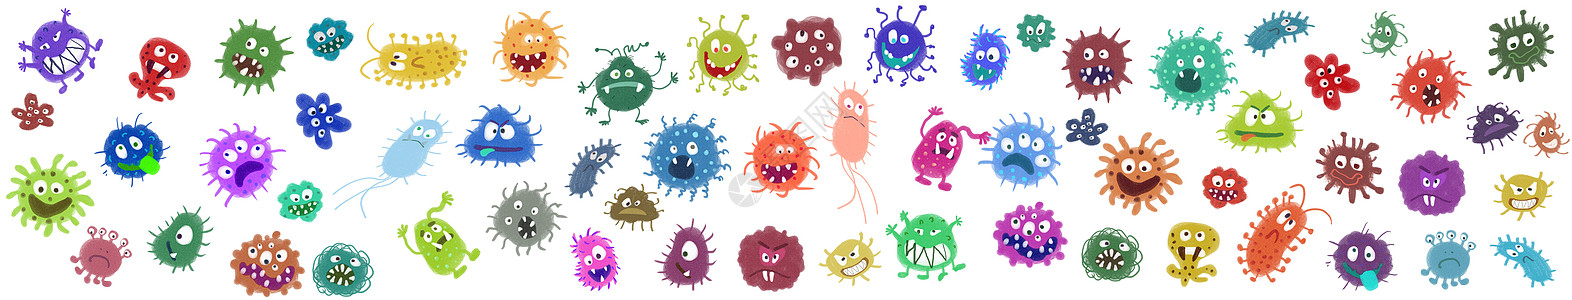 菌细胞细菌病毒元素插画